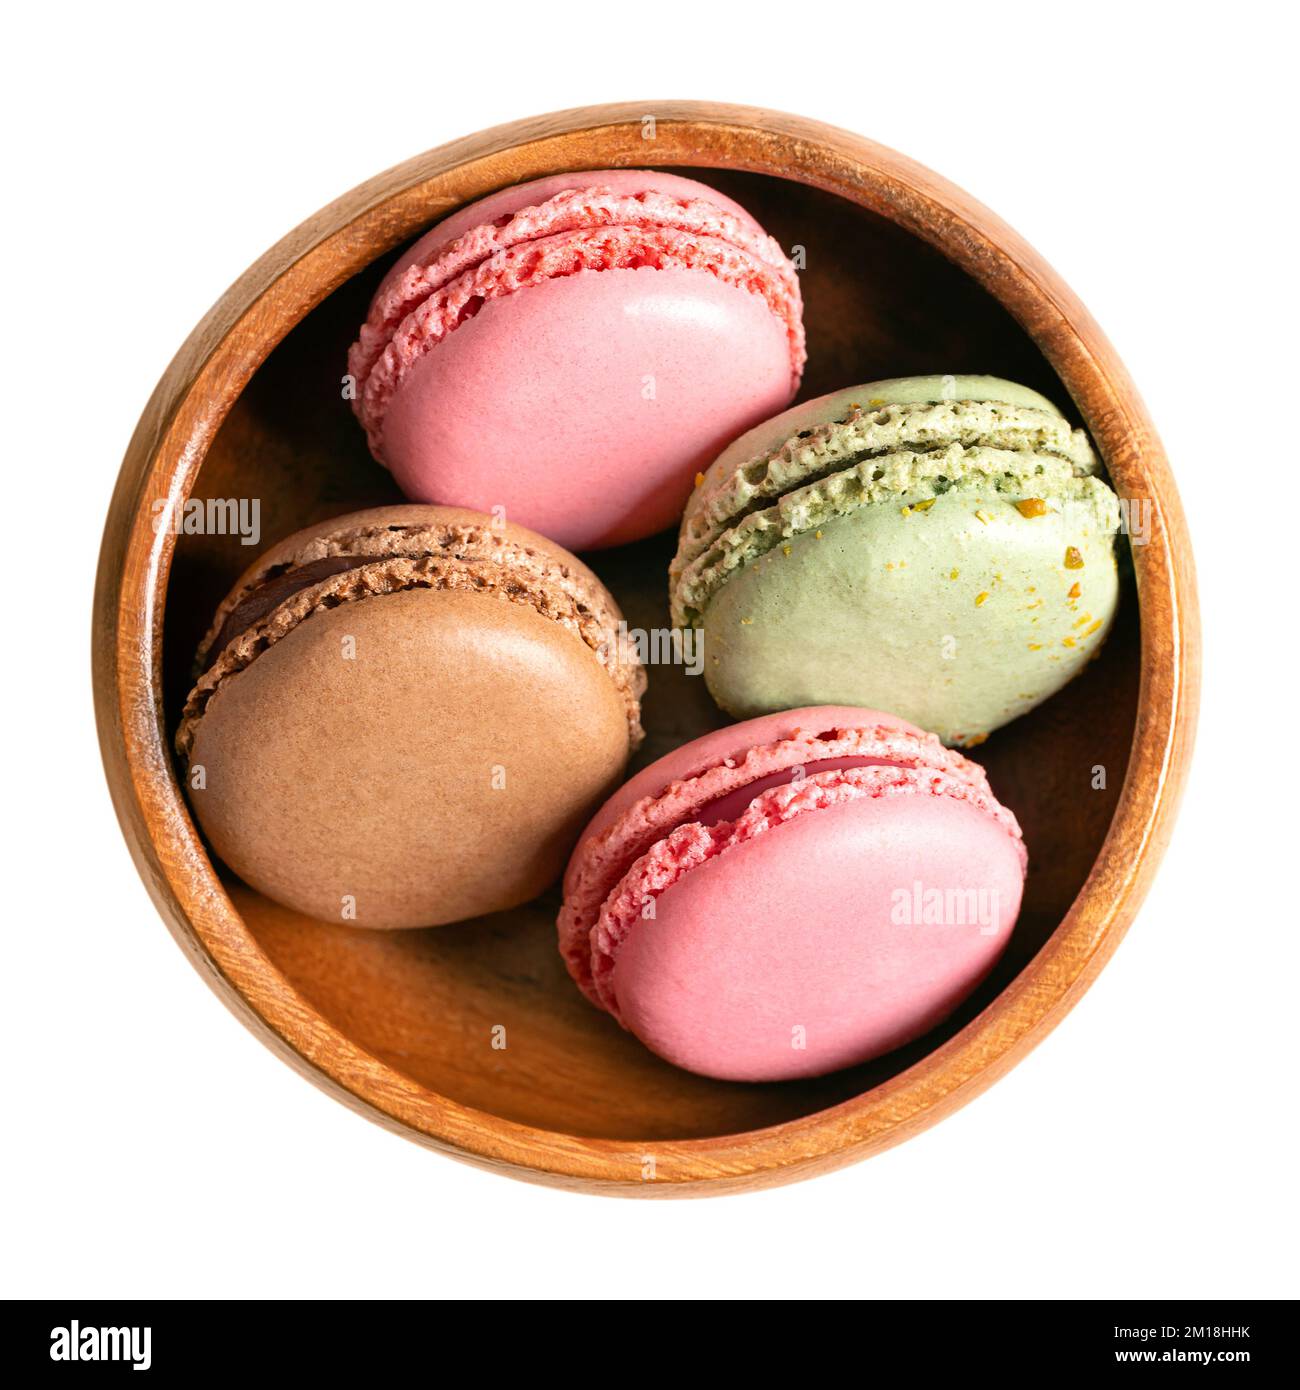 Macaron, macaron francesi in una ciotola di legno. Confezione a base di meringa dolce, stile parigino, realizzata con albume, zucchero, mandorle e coloranti alimentari. Foto Stock